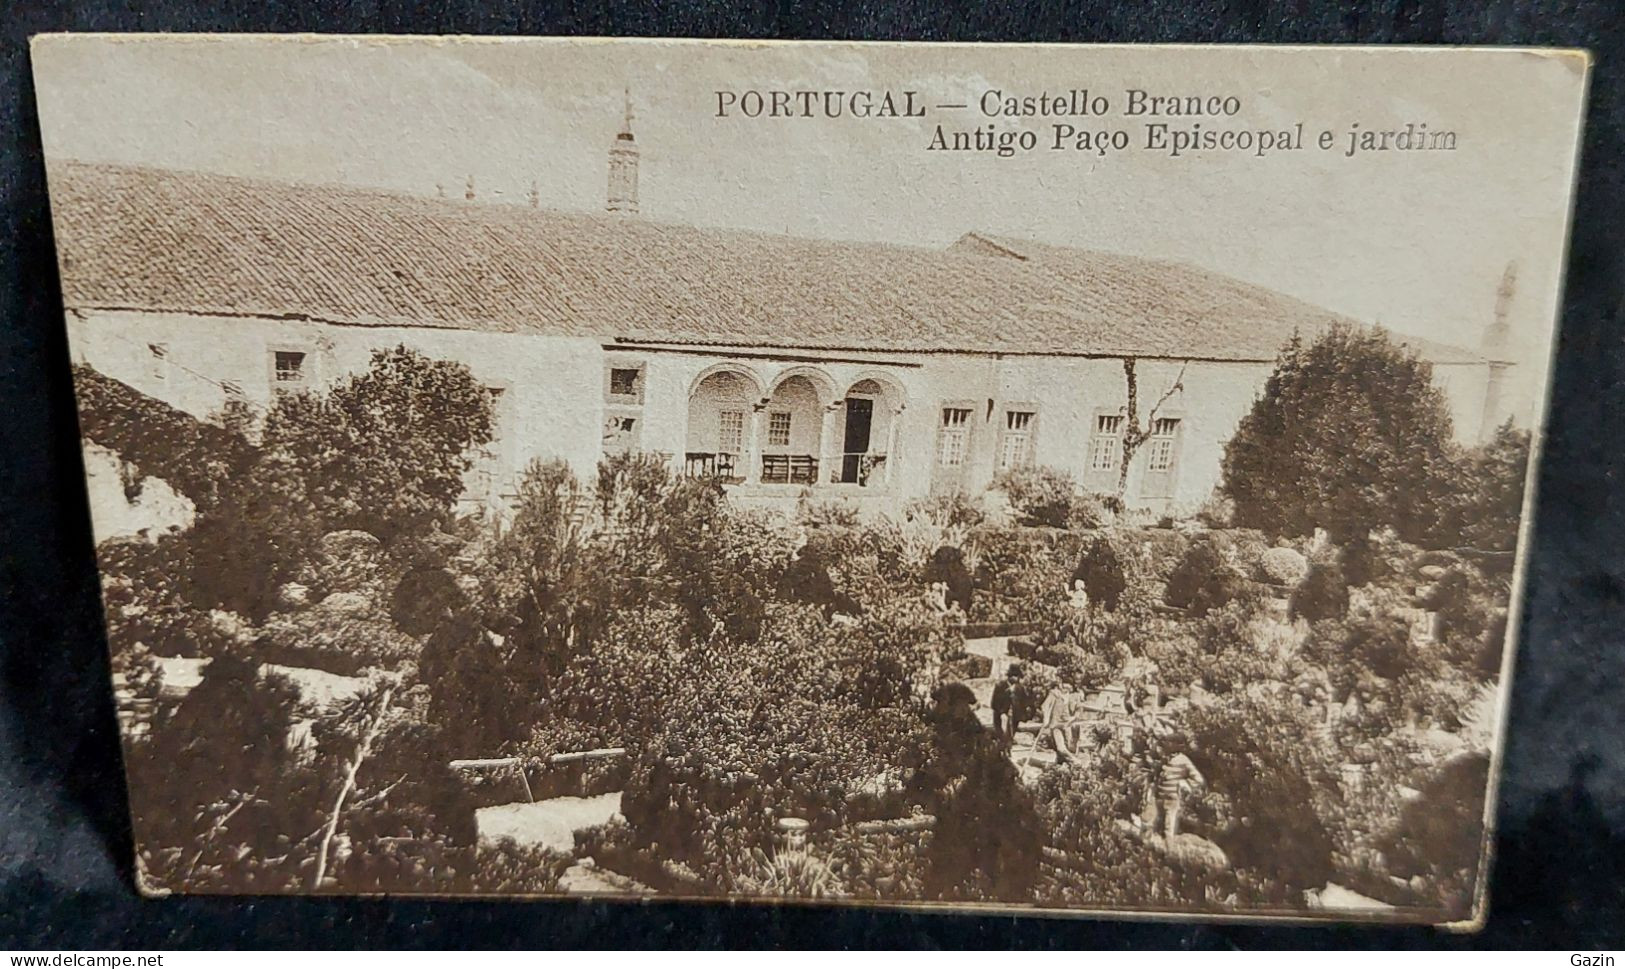 C6/6 - Antigo Paço Episcopal E Jardim * Castello Branco * Portugal - Castelo Branco